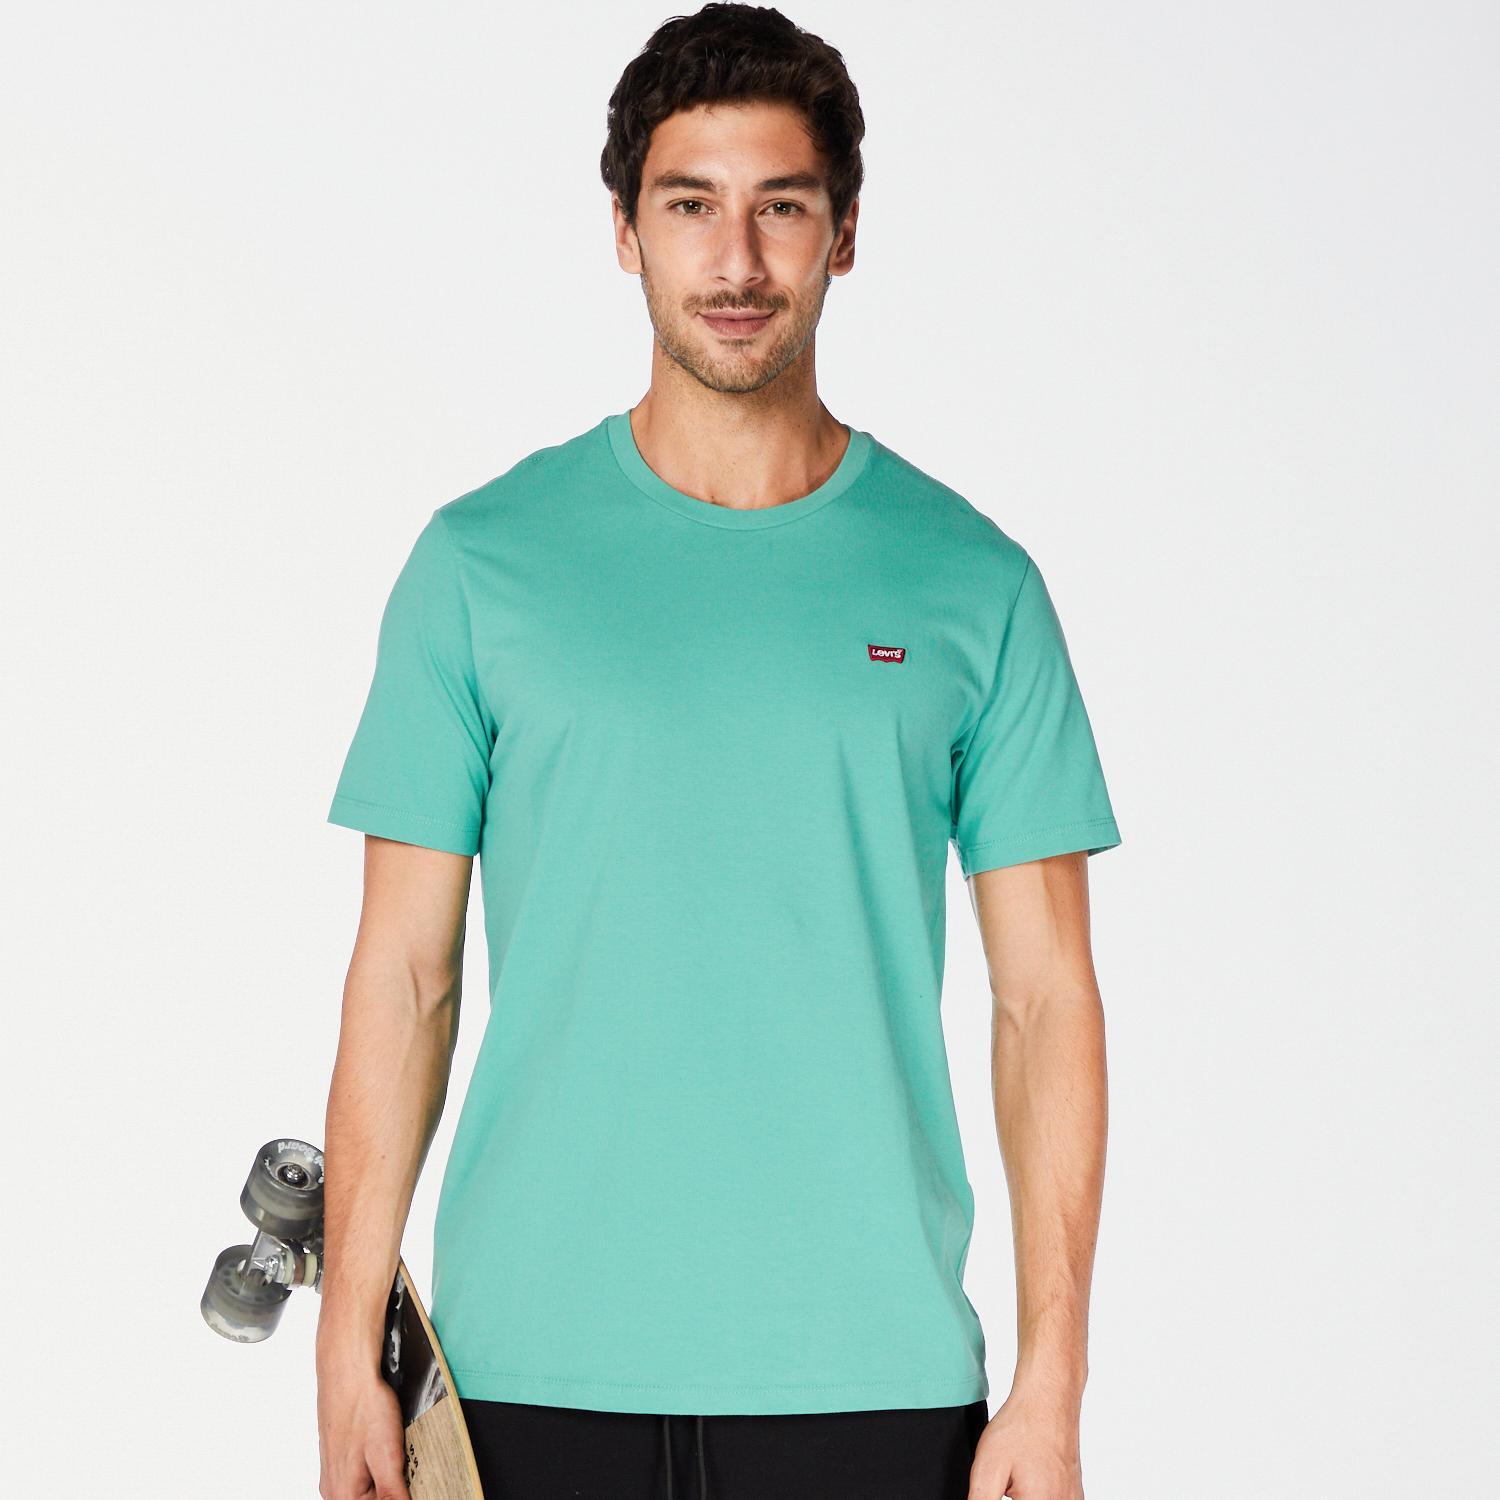 Levi's Original - Verde - T-shirt Homem tamanho L